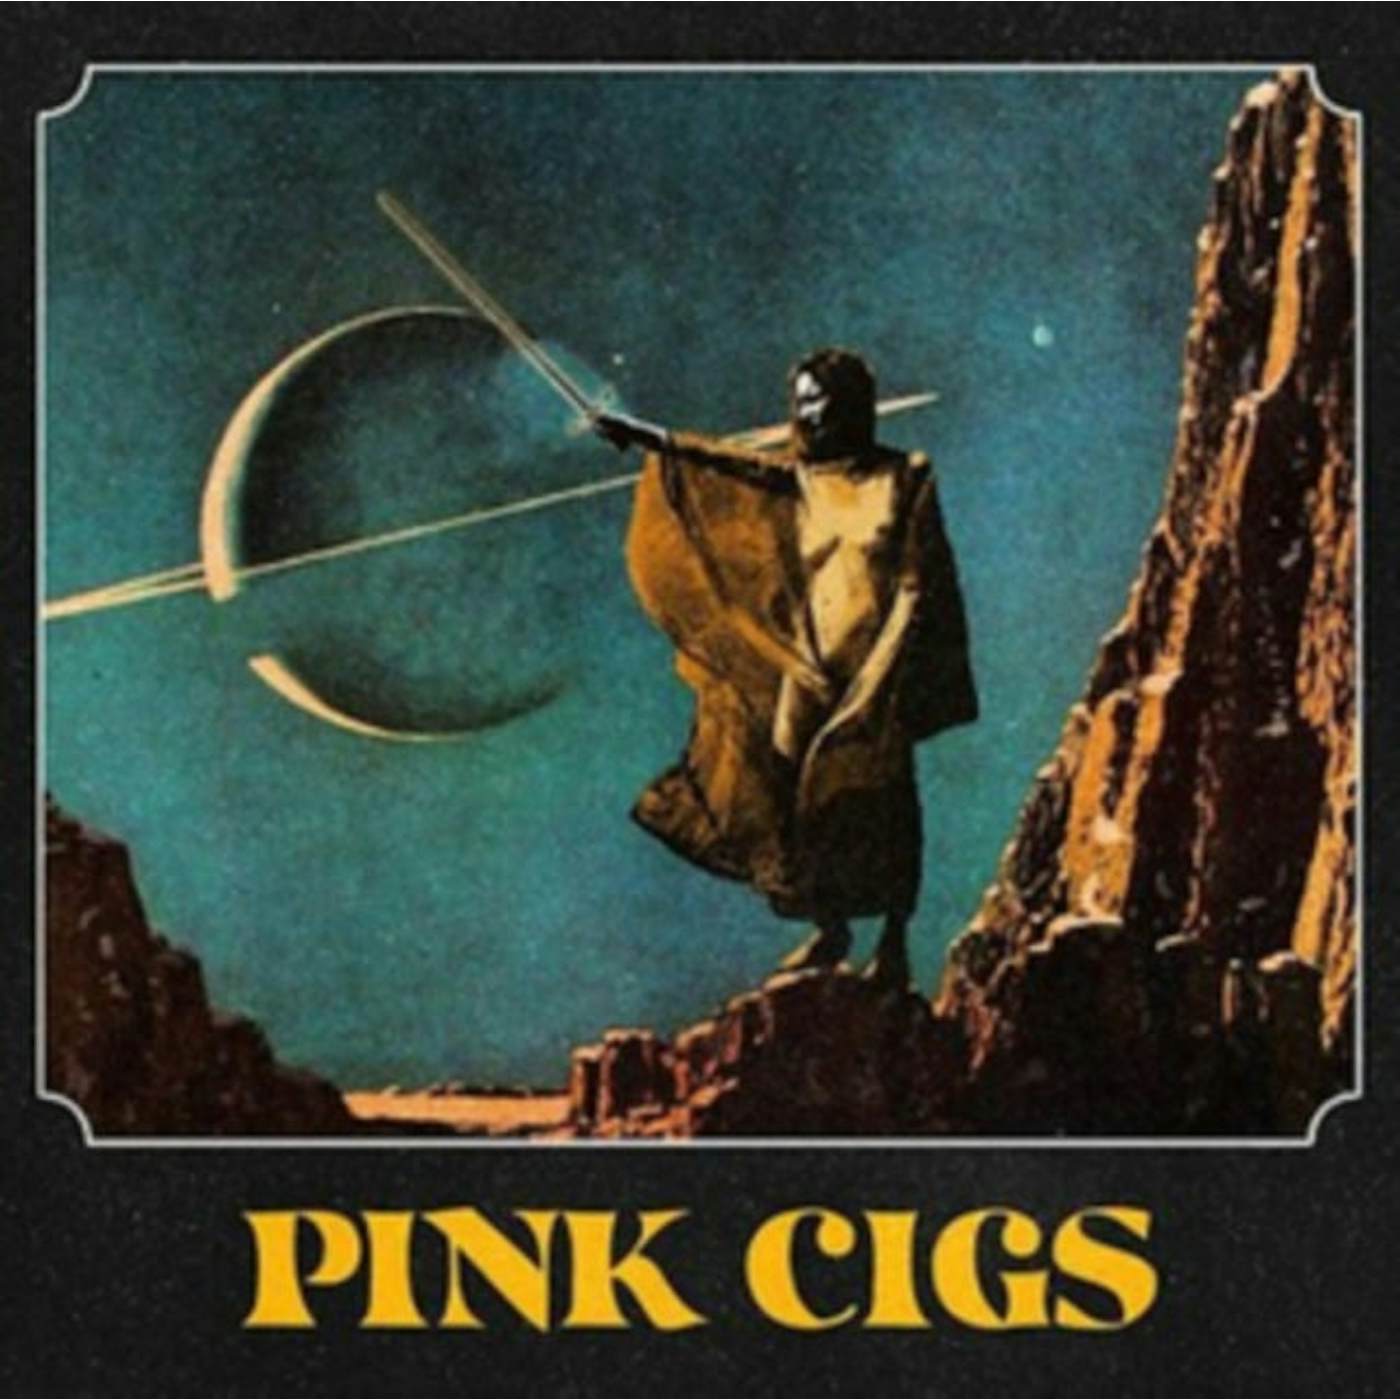 Pink Cigs CD - Pink Cigs